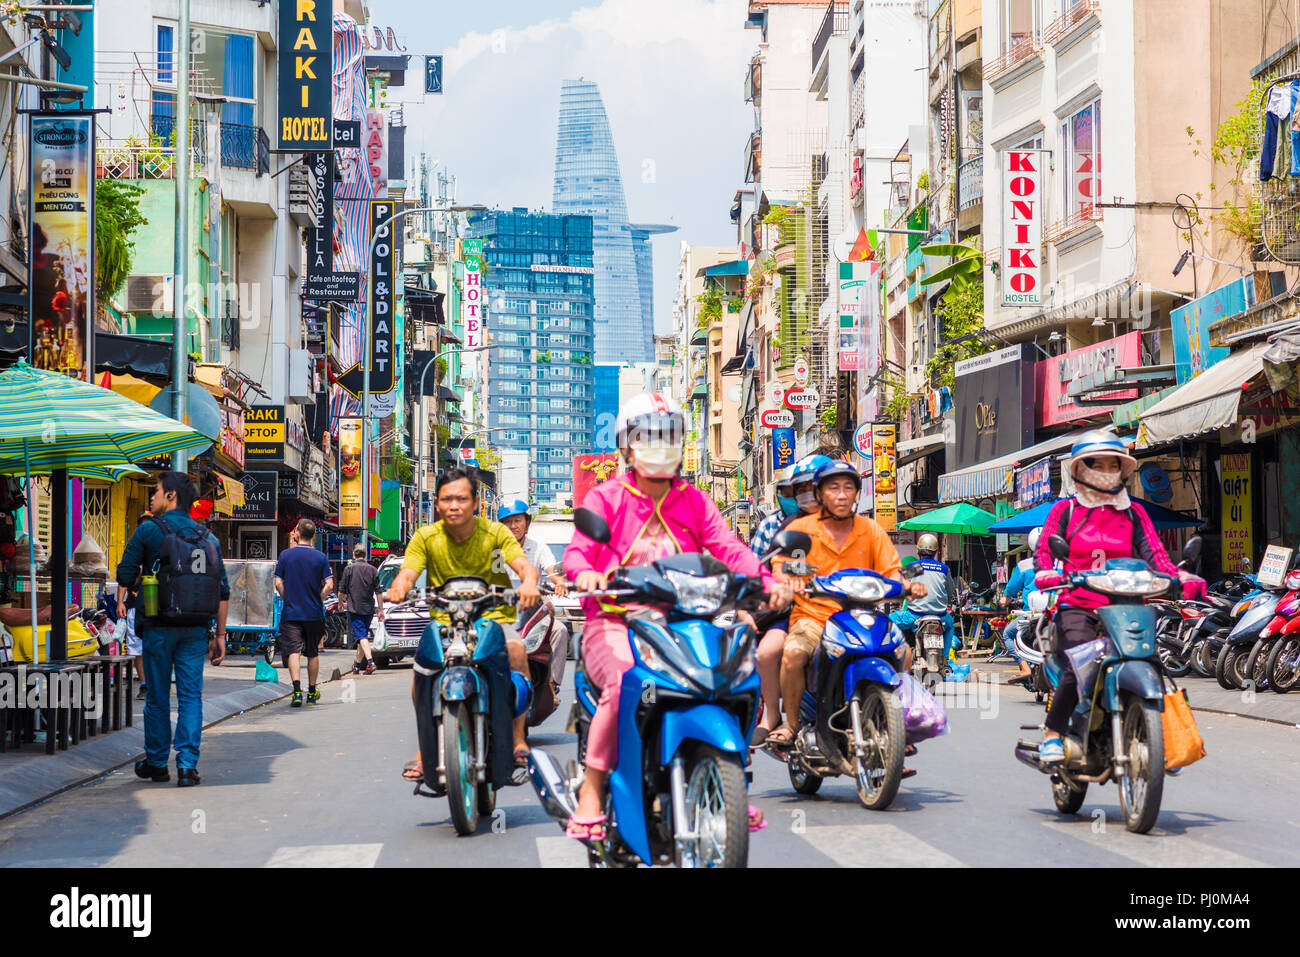 Vue sur Bui Vien Street avec ses panneaux, des hôtels, Tour Bitexco et vietnamiens, porter des vêtements colorés, ride les scooters. Banque D'Images